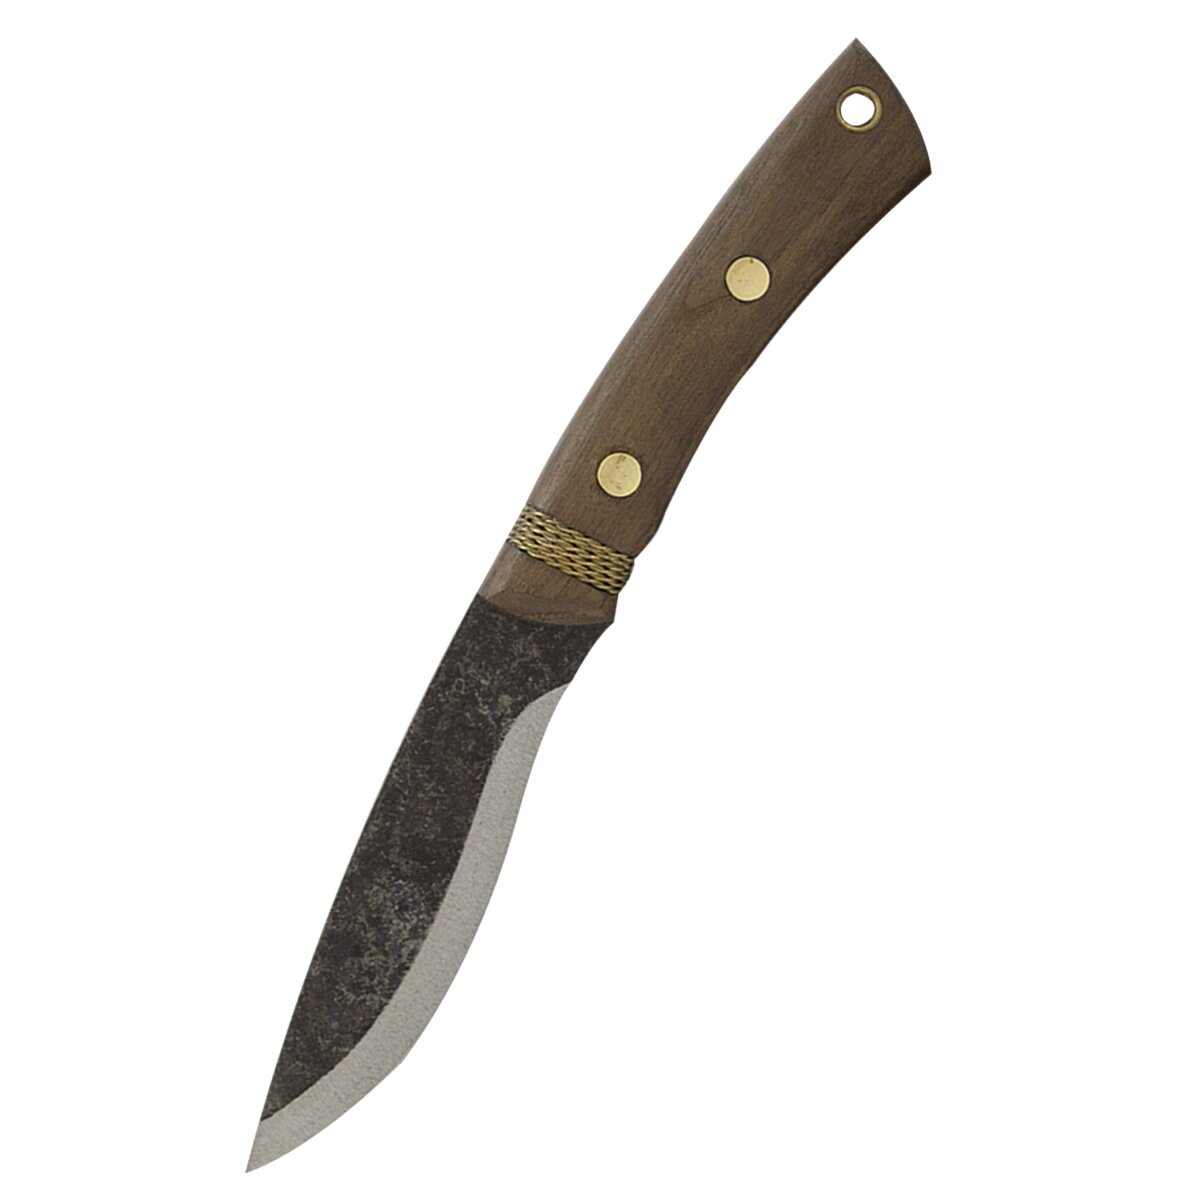 Huron knife, Condor